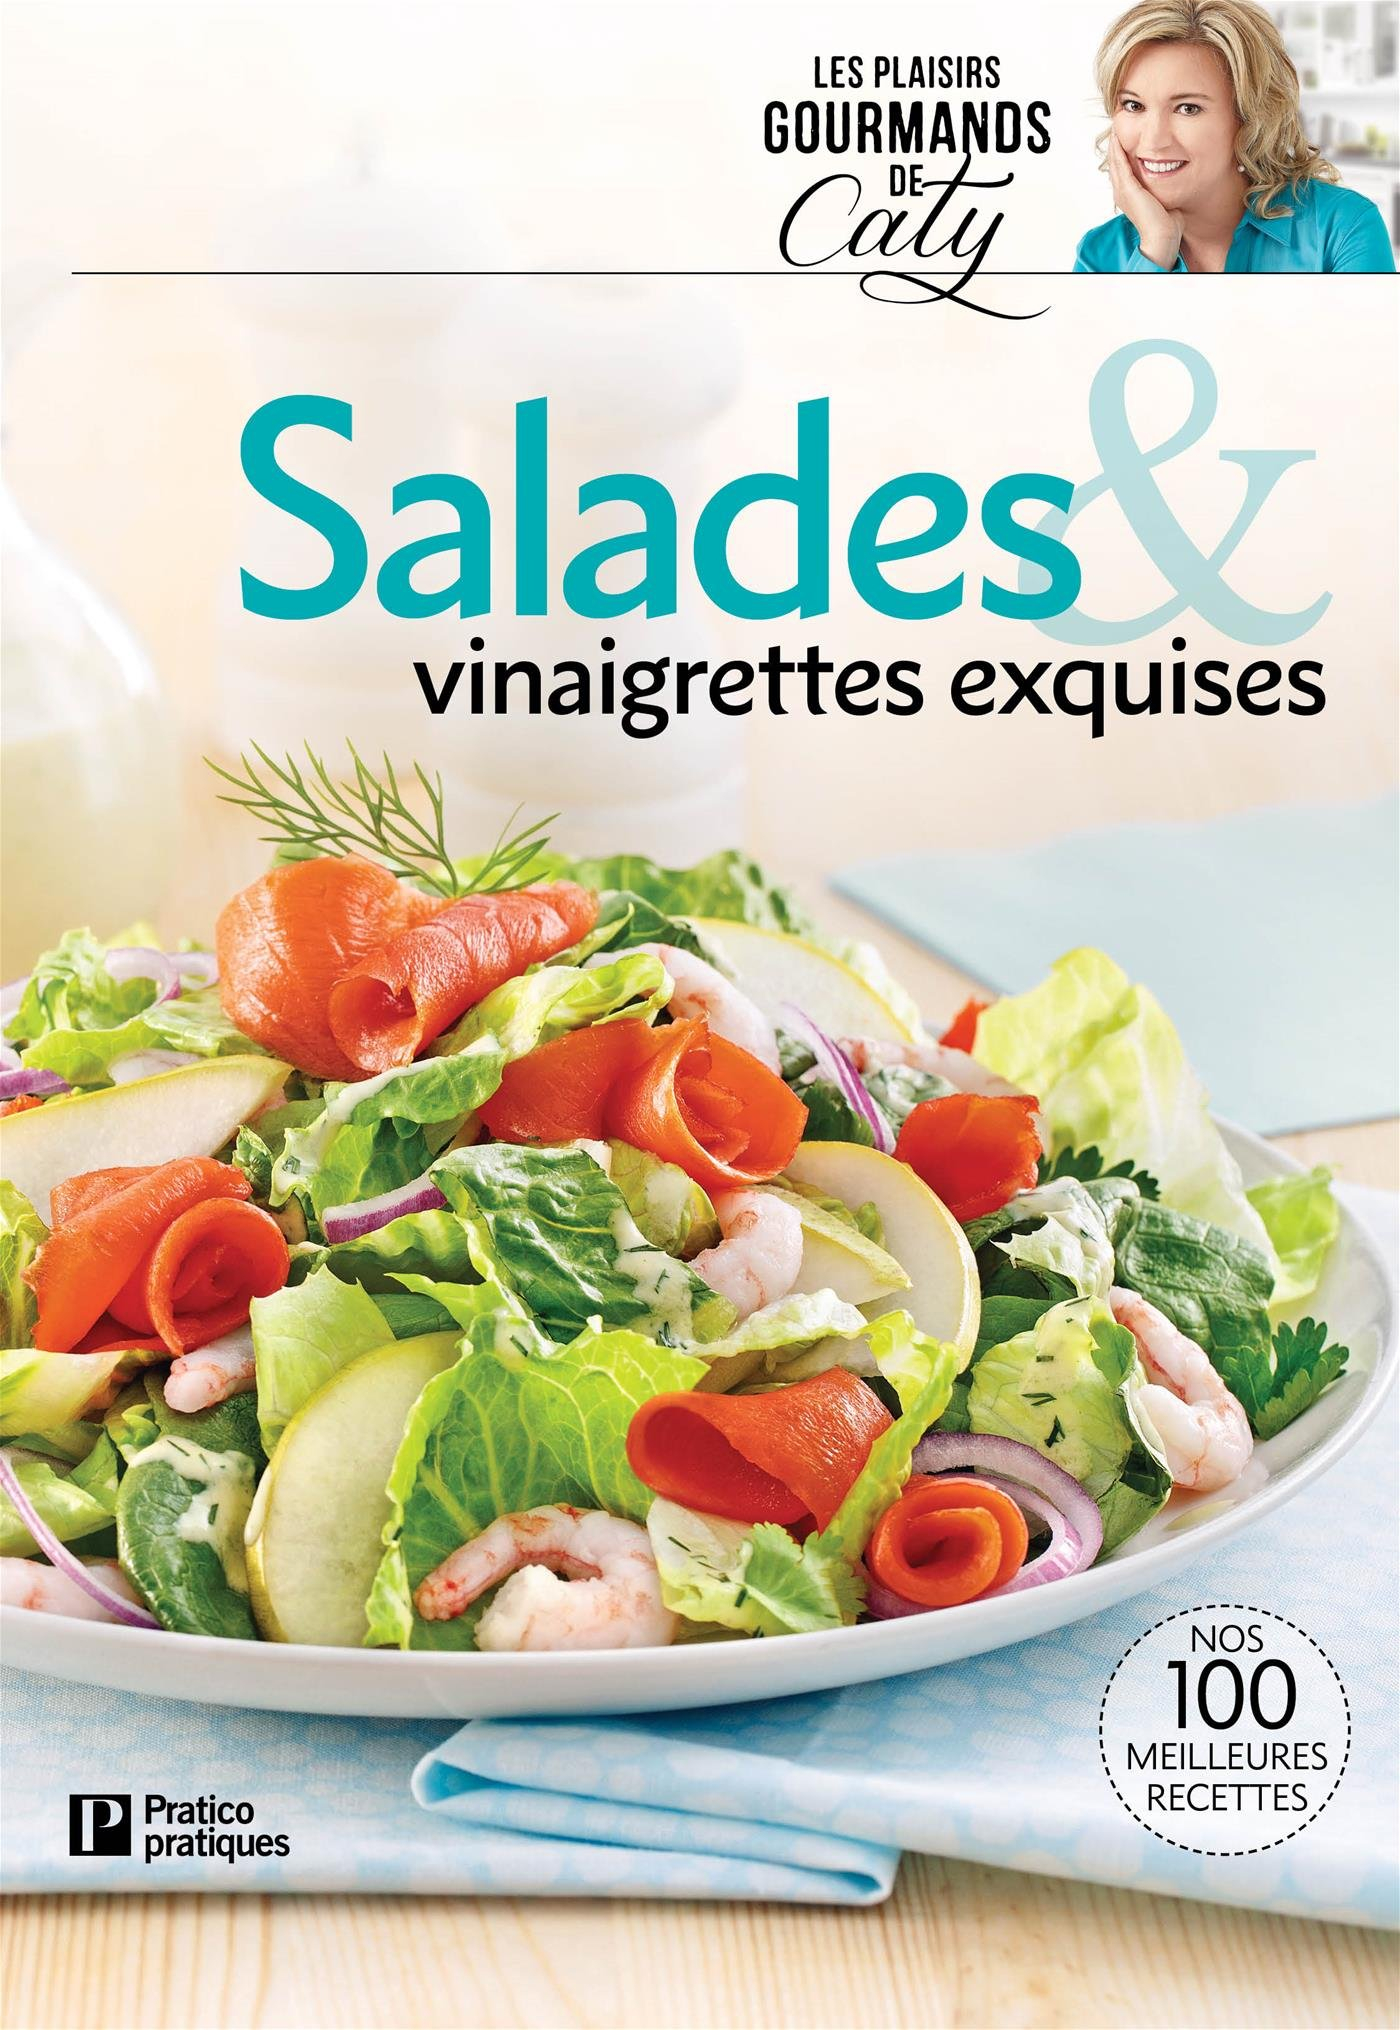 Salades & vinaigrettes exquises: Nos 100 meilleure